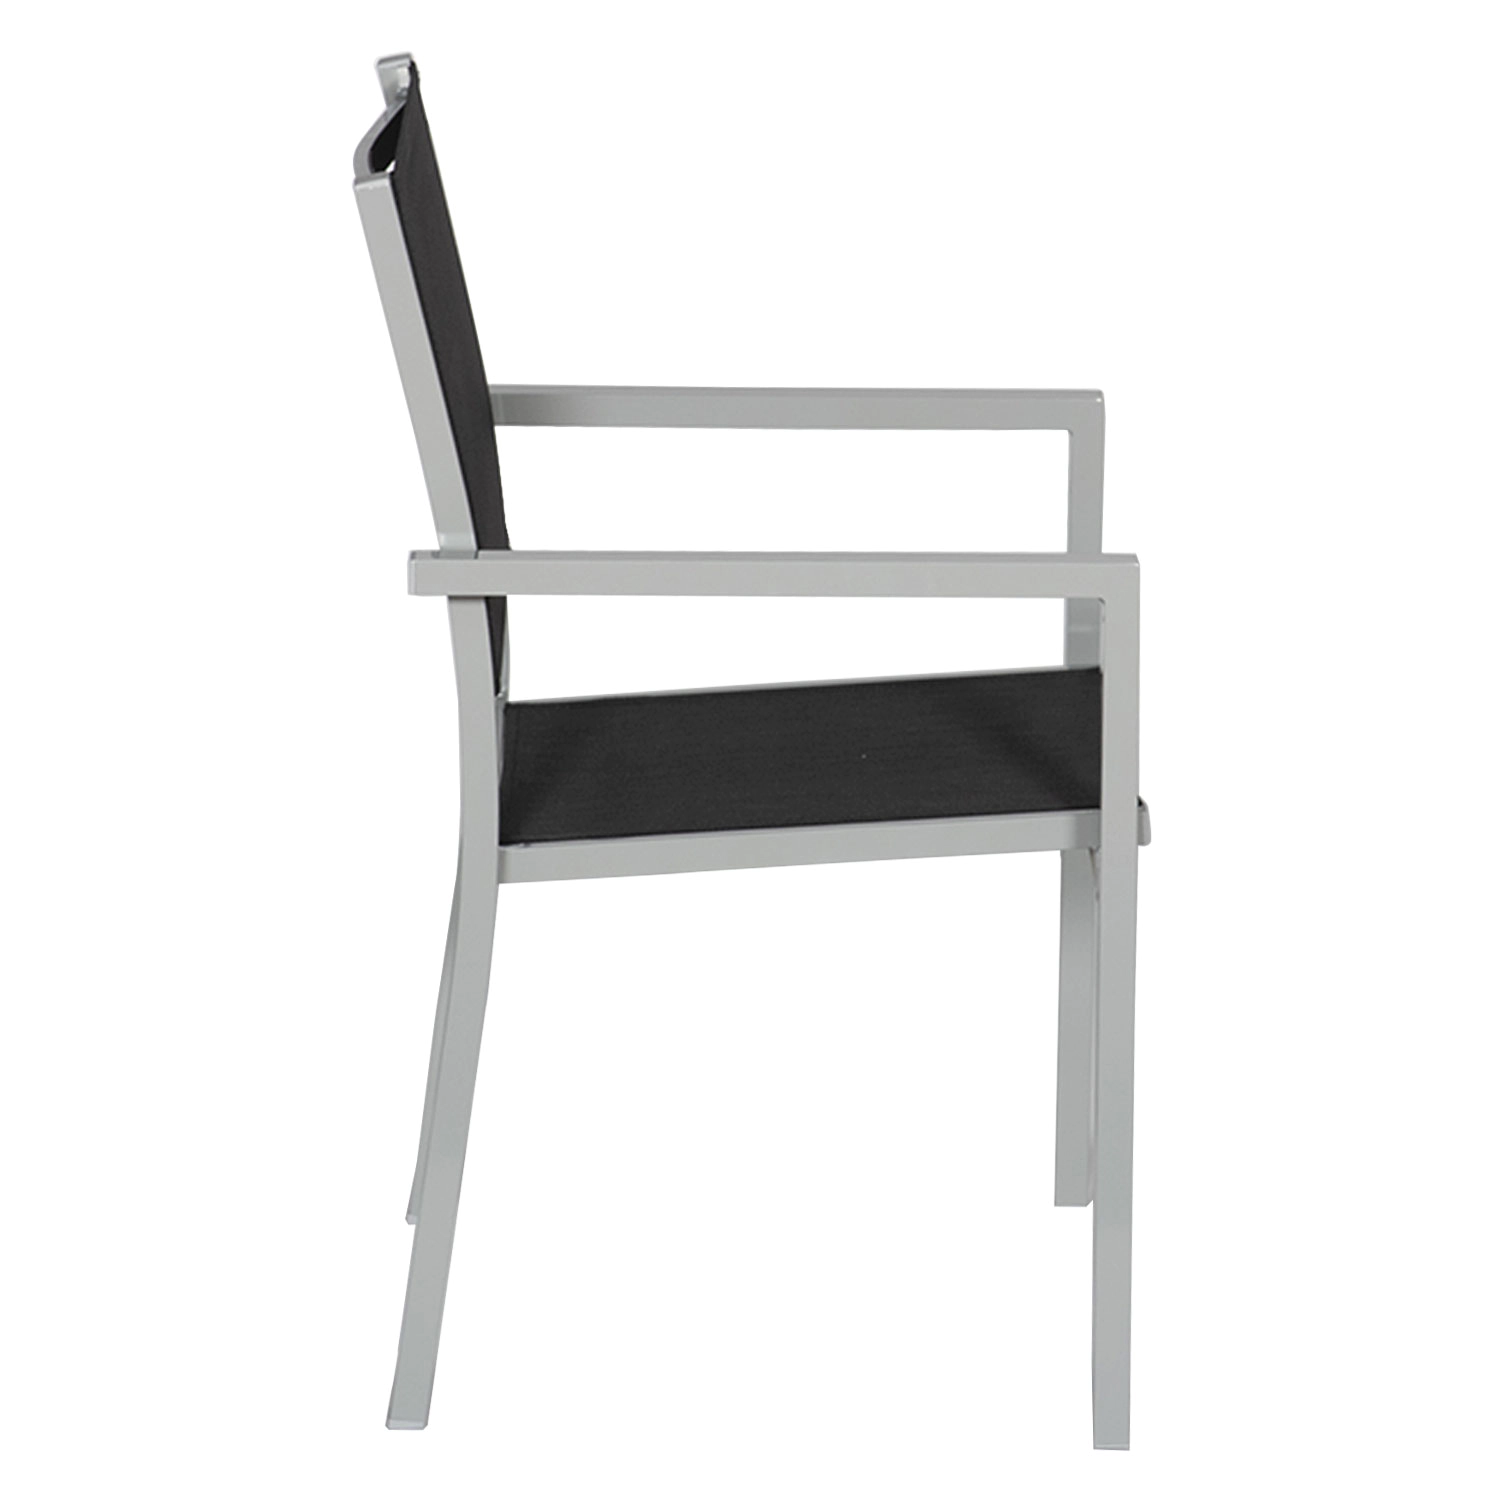 Satz von 8 Stühlen aus grauem Aluminium - schwarzes Textilene